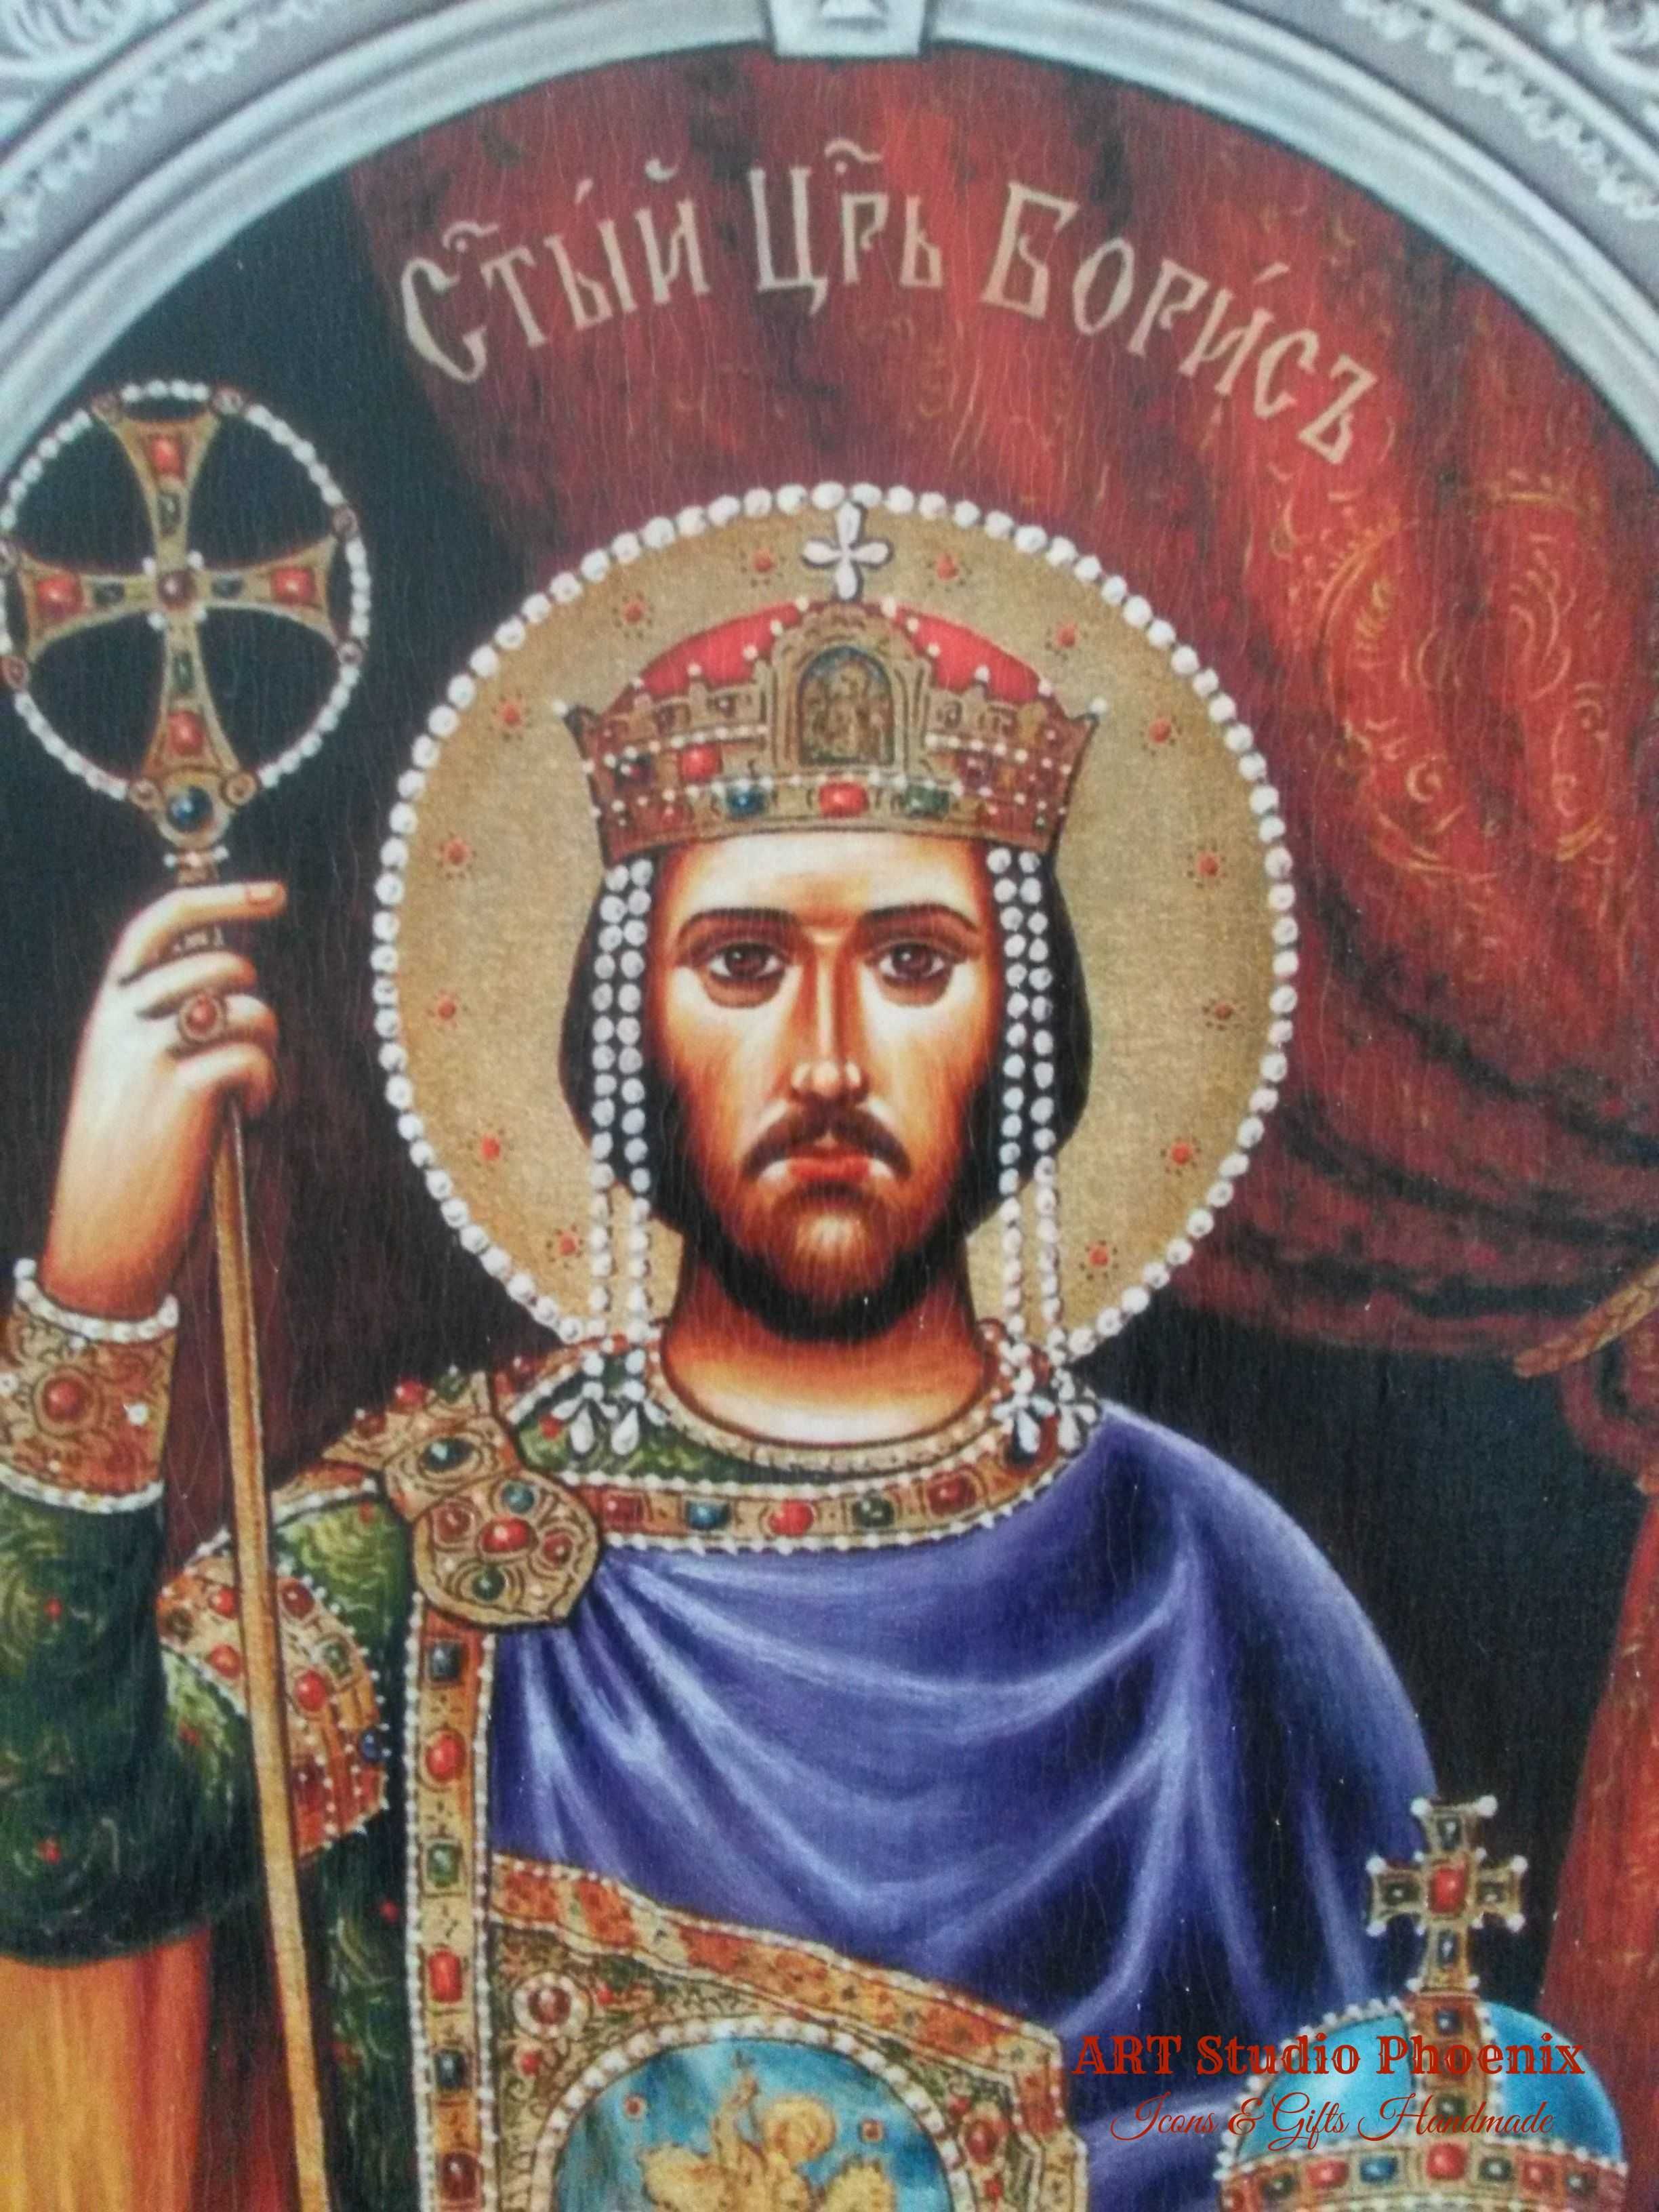 Икона на Свети Цар Борис, icona Sveti Car Boris